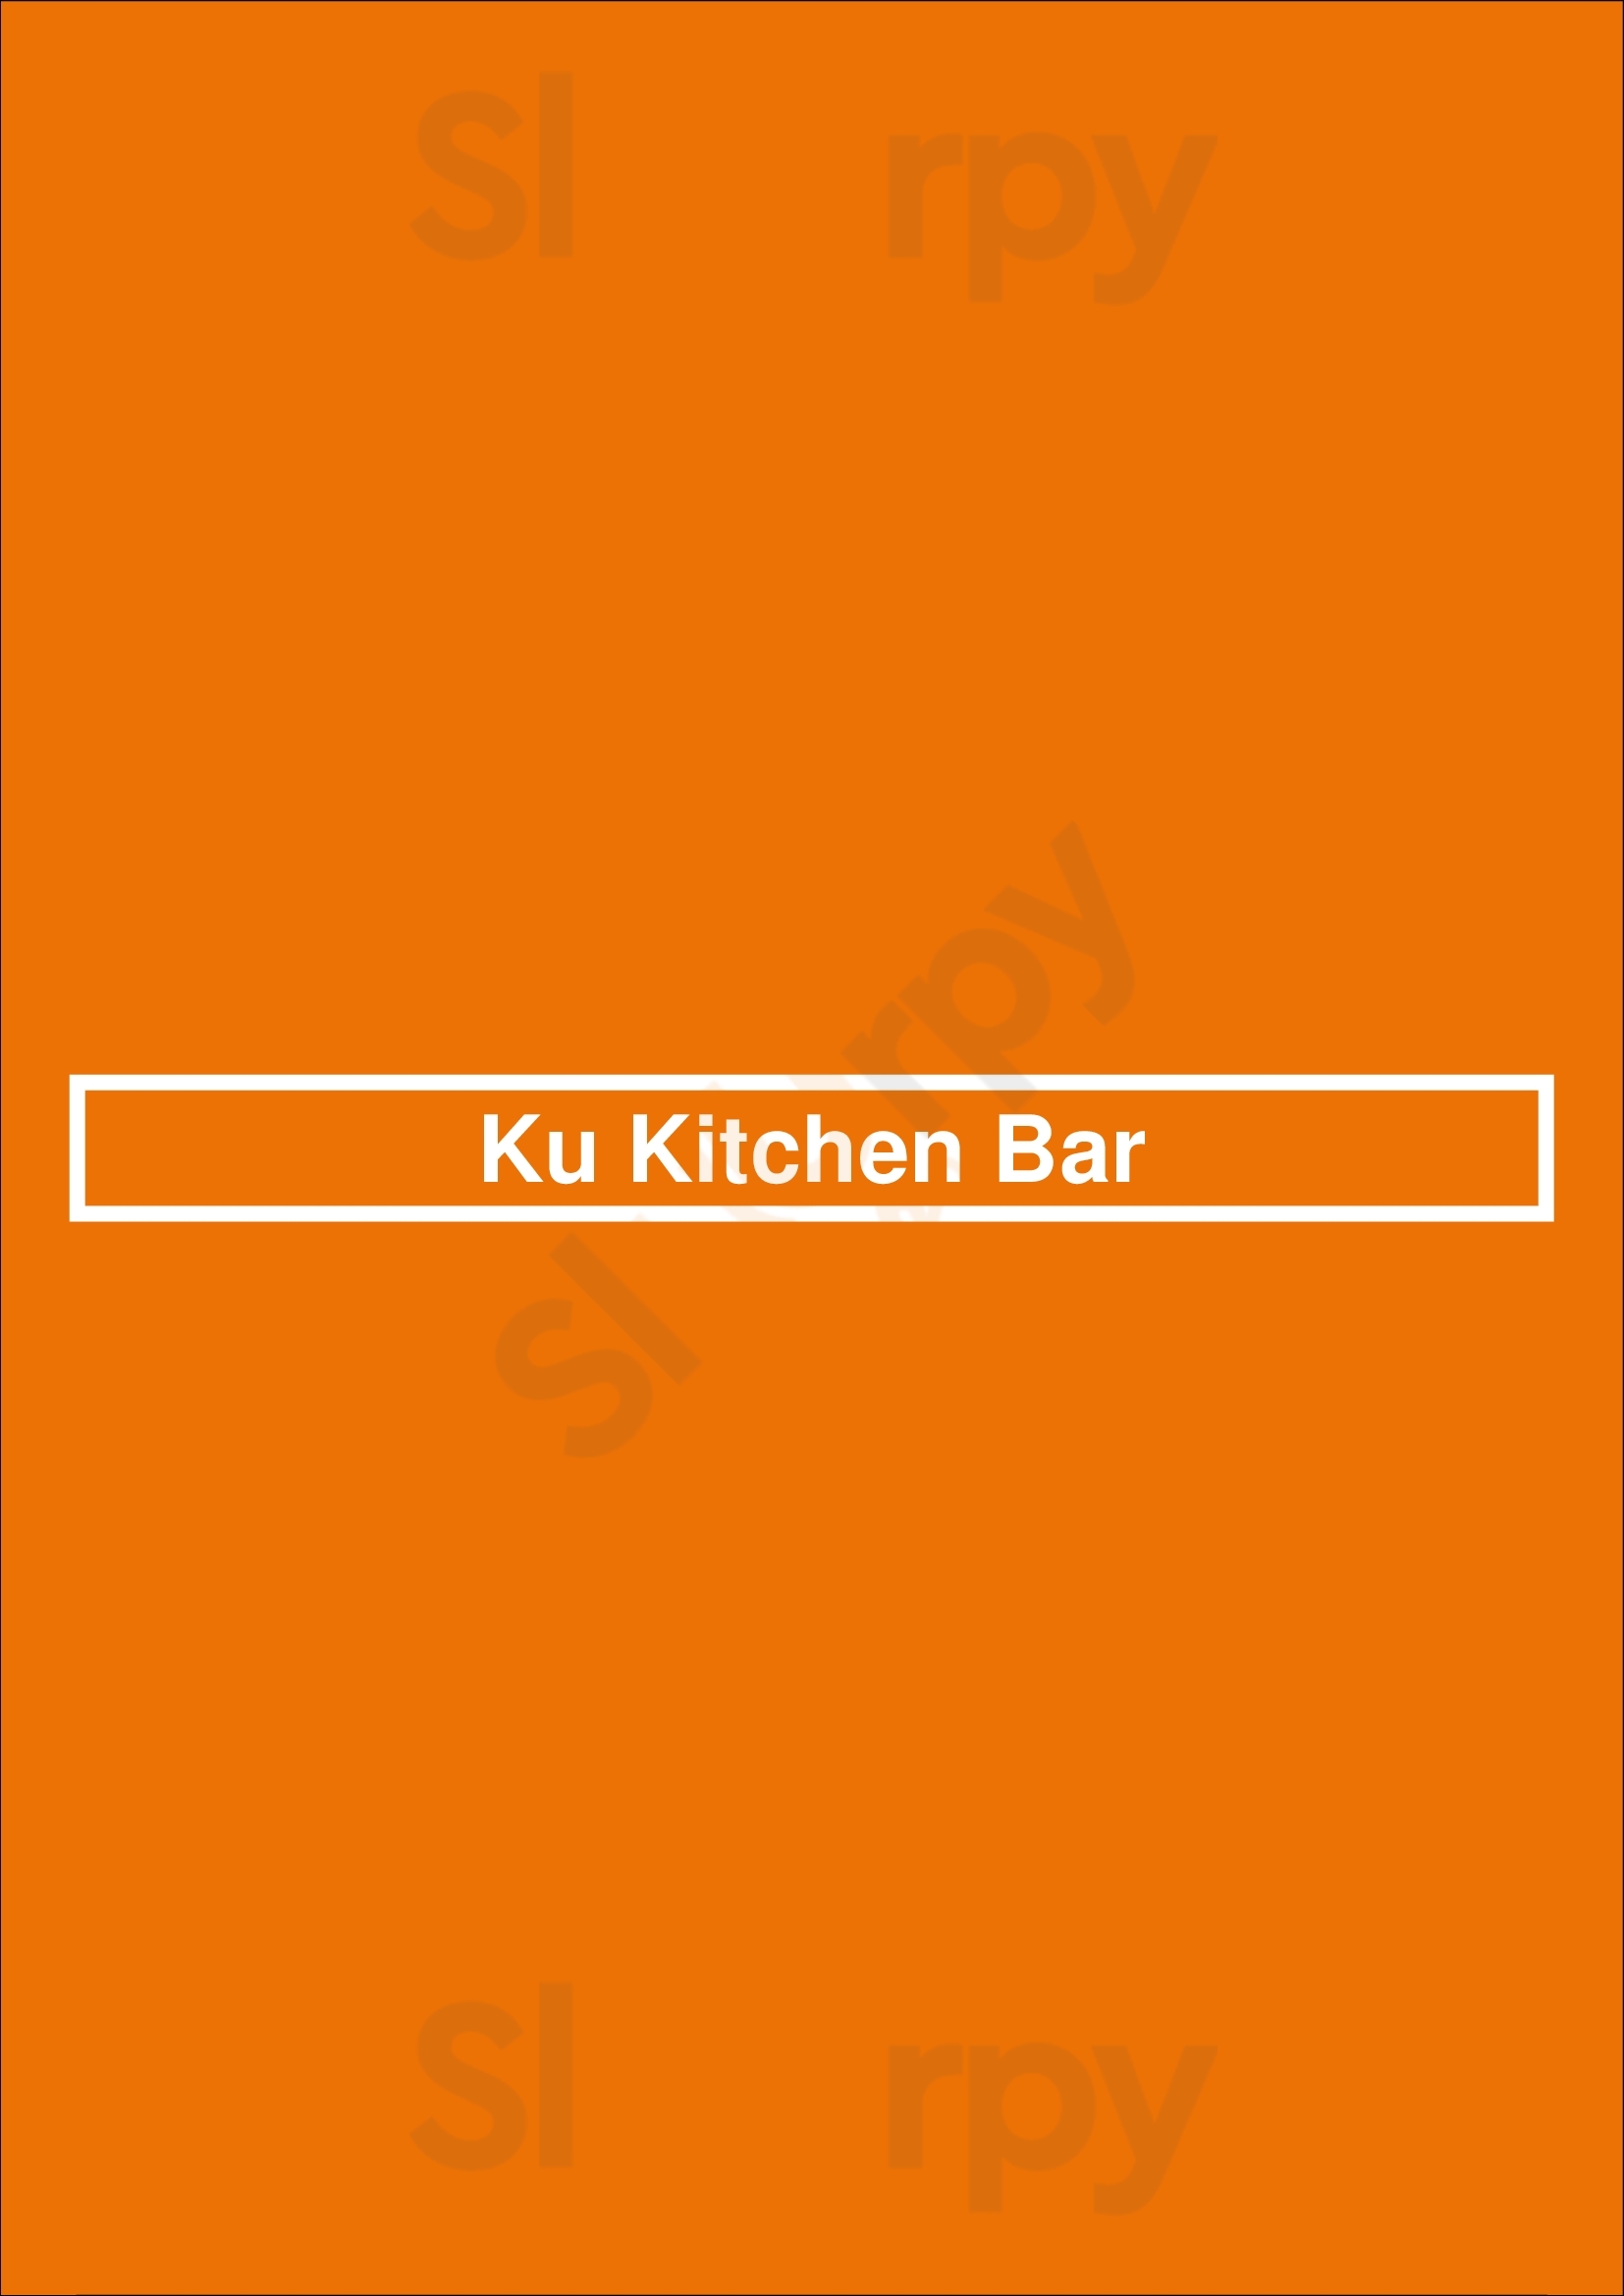 Ku Kitchen Bar Amsterdam Menu - 1